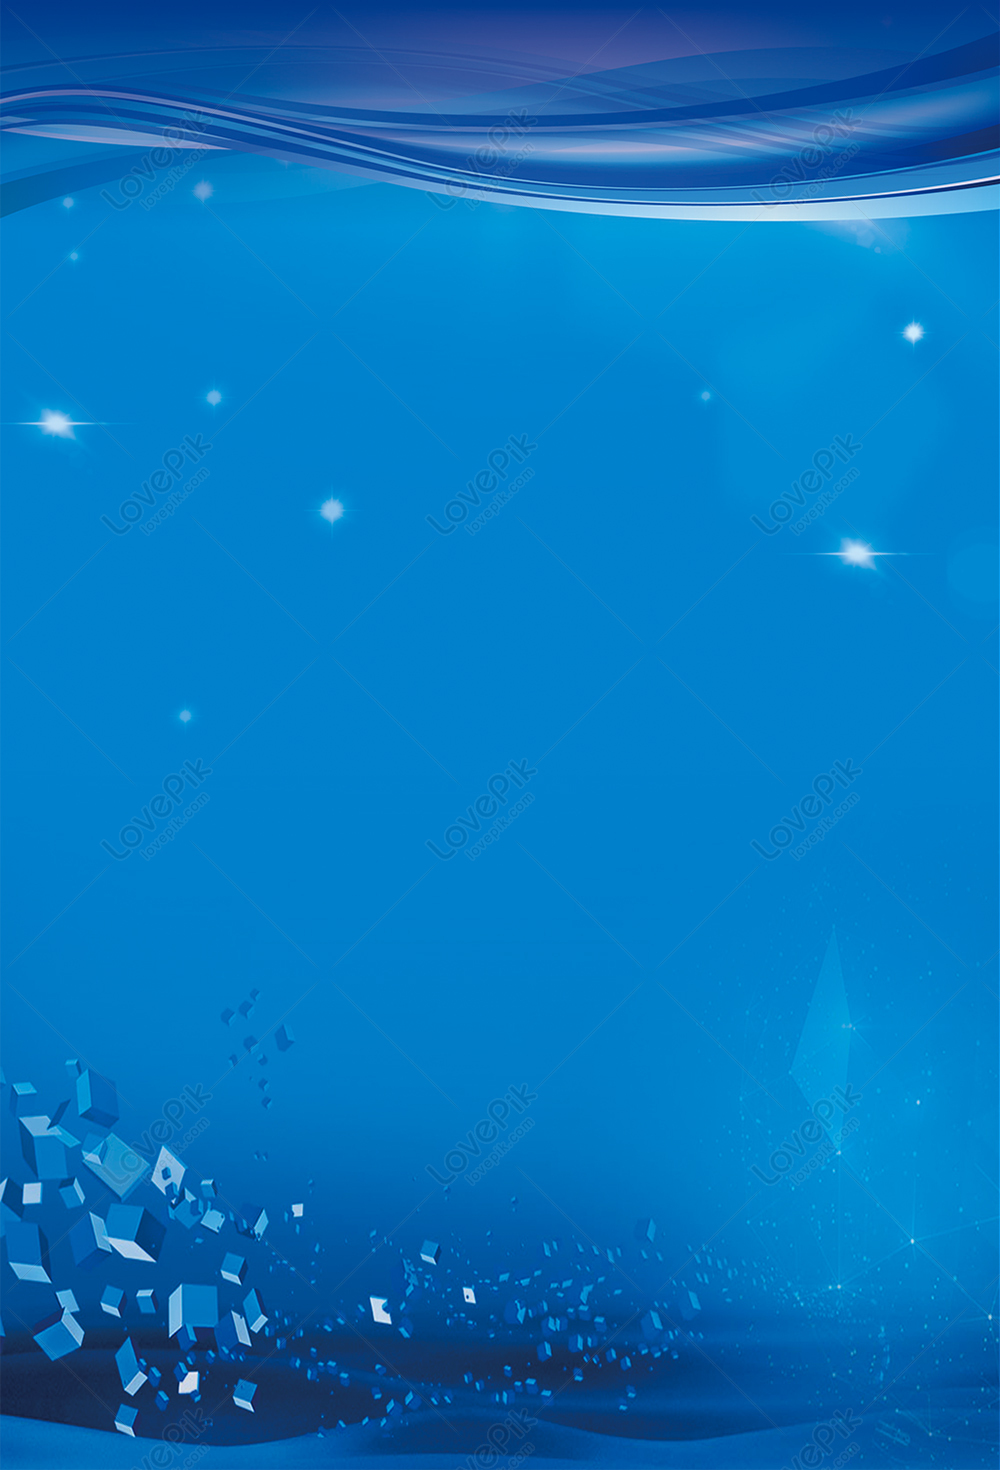 blue poster background design